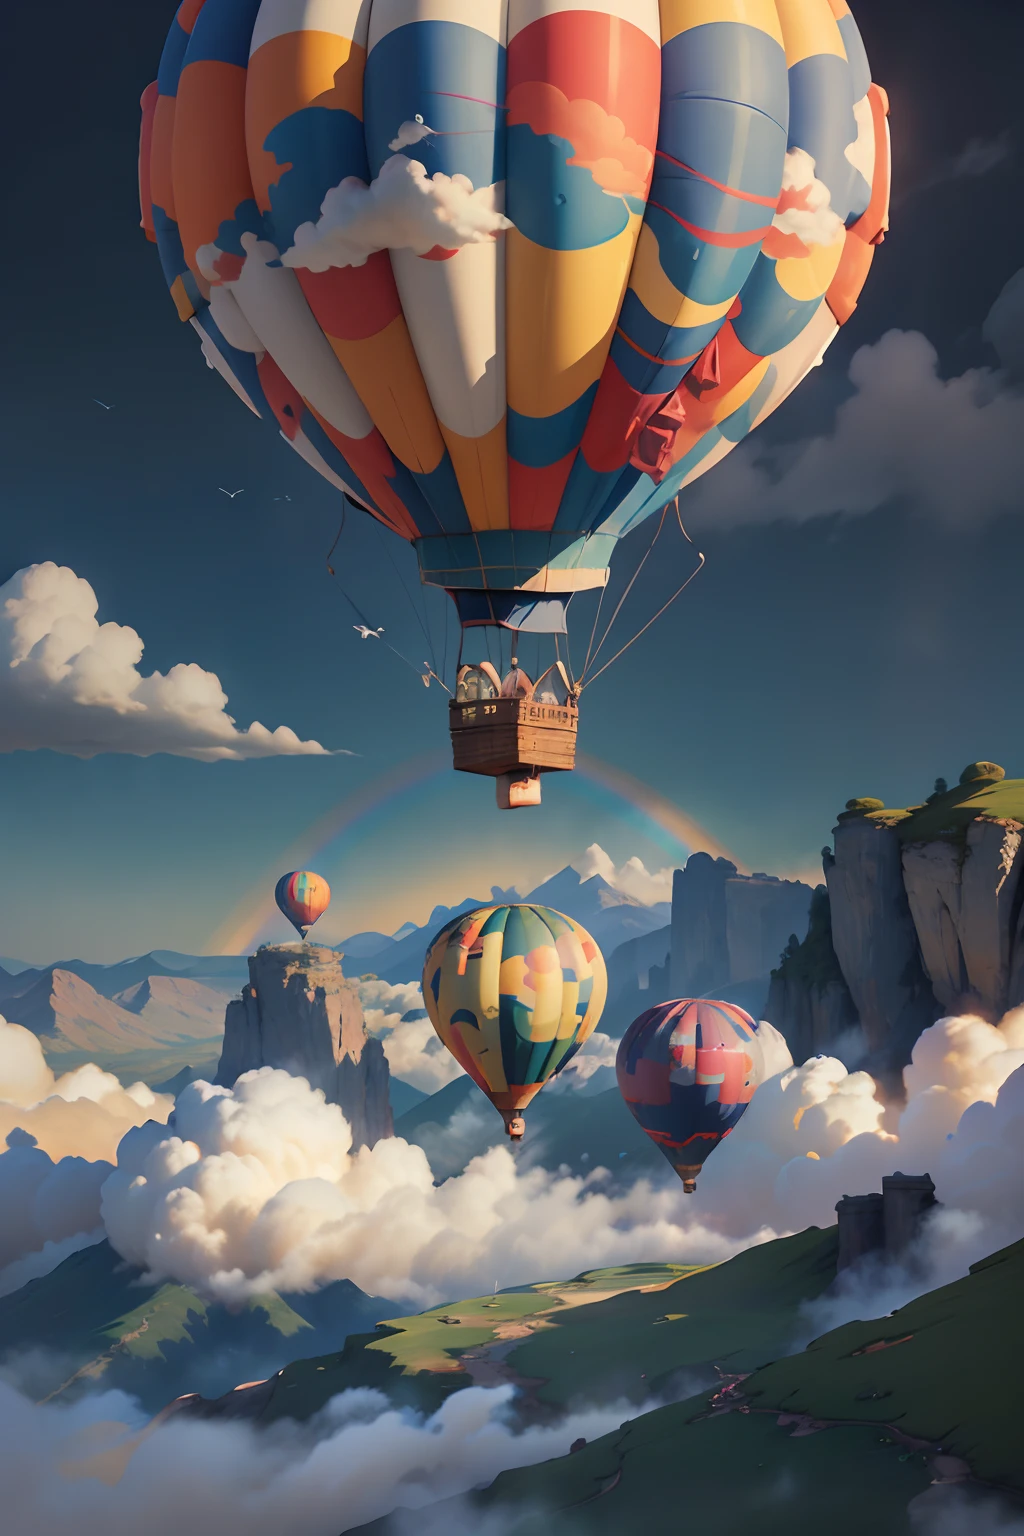 详细信息元素：彩色热气球、远处云雾缭绕、翱翔的鸟儿、阳光普照的草地、绚烂的彩虹